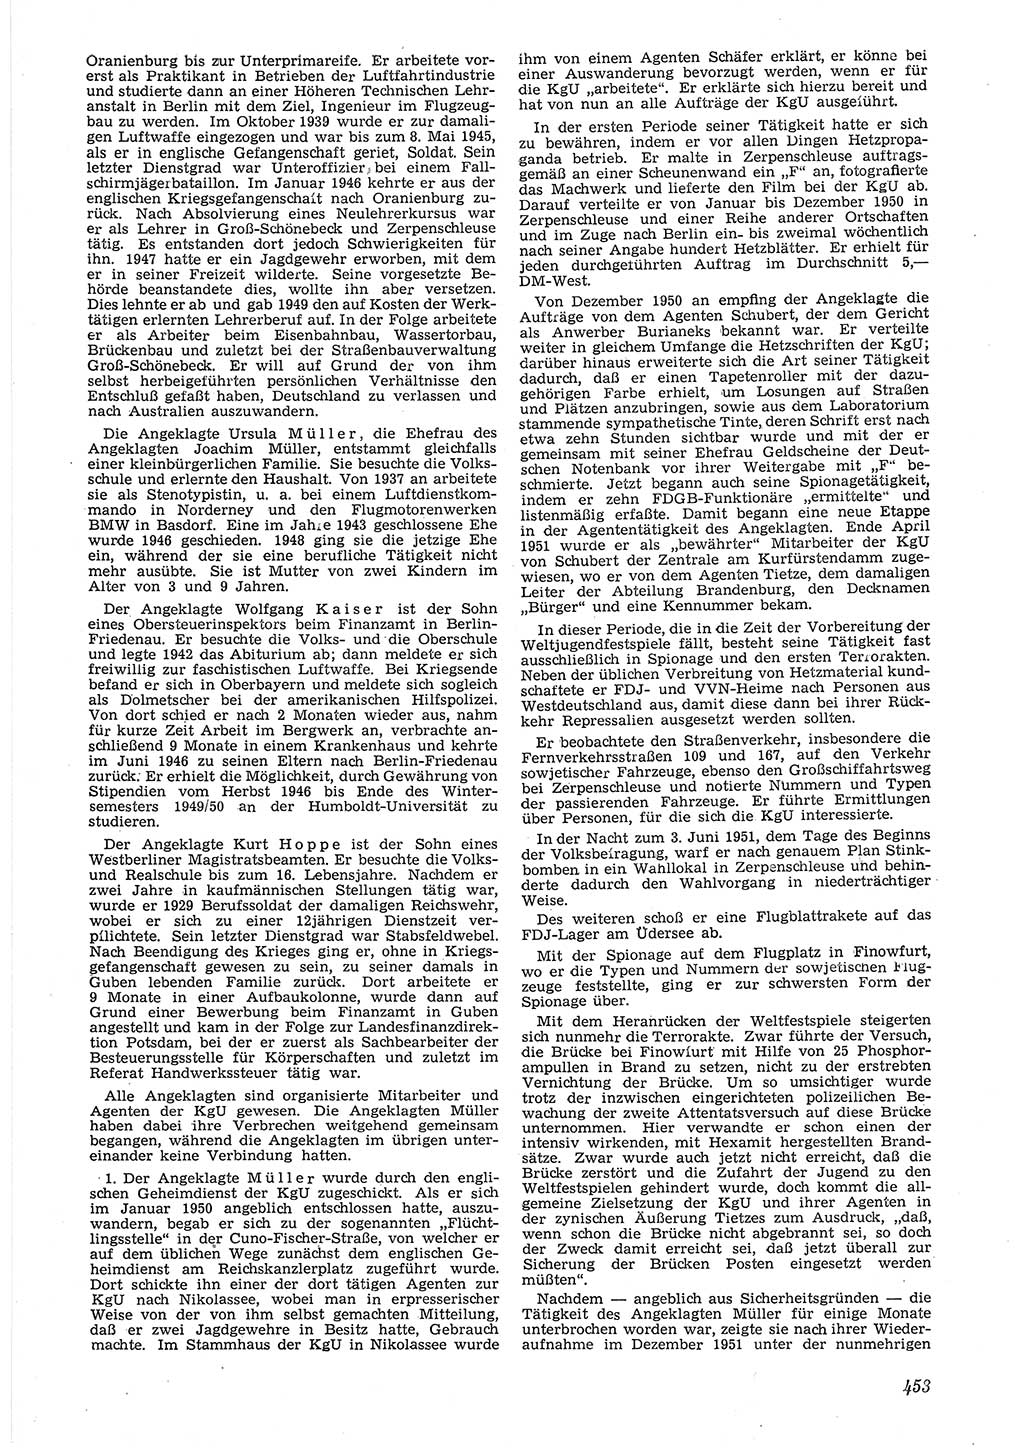 Neue Justiz (NJ), Zeitschrift für Recht und Rechtswissenschaft [Deutsche Demokratische Republik (DDR)], 6. Jahrgang 1952, Seite 453 (NJ DDR 1952, S. 453)